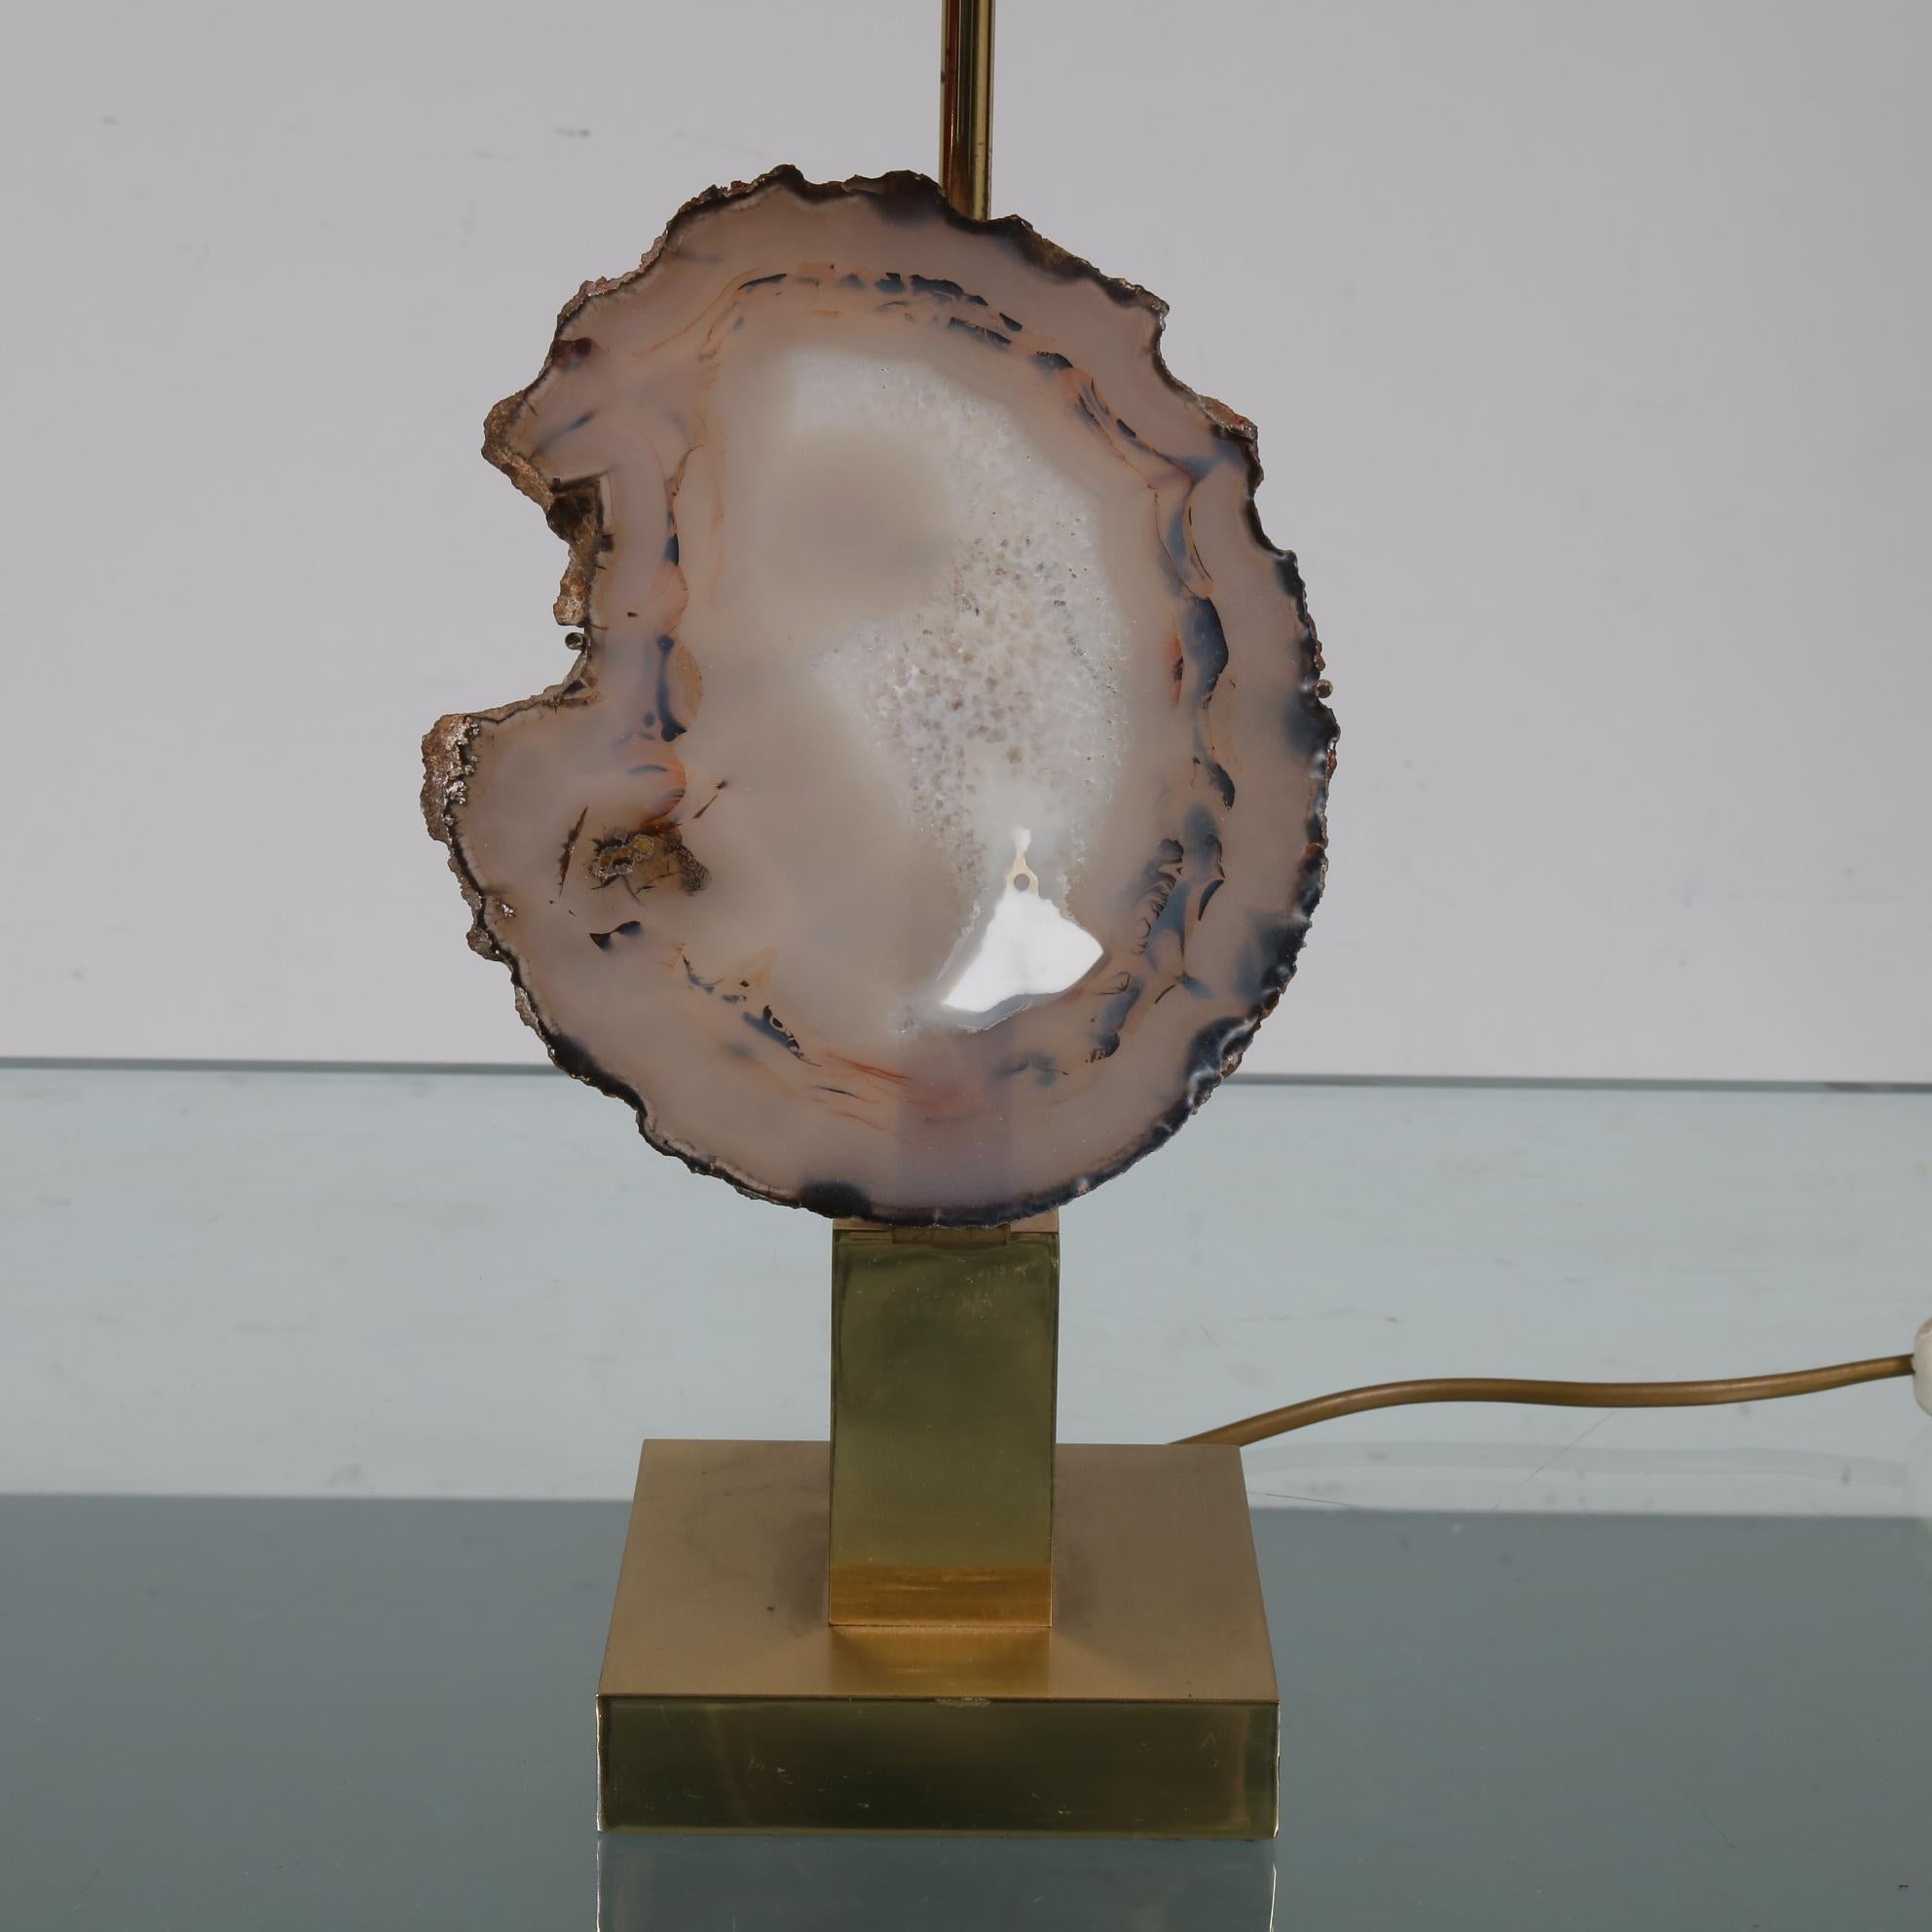 Spectaculaire lampe de table en agate à la manière de Willy Daros, fabriquée vers 1970 en Belgique.

La lampe a une belle base en laiton et un capot en tissu. Le véritable point d'attraction est la pierre en agate rare qui se trouve dans la base.